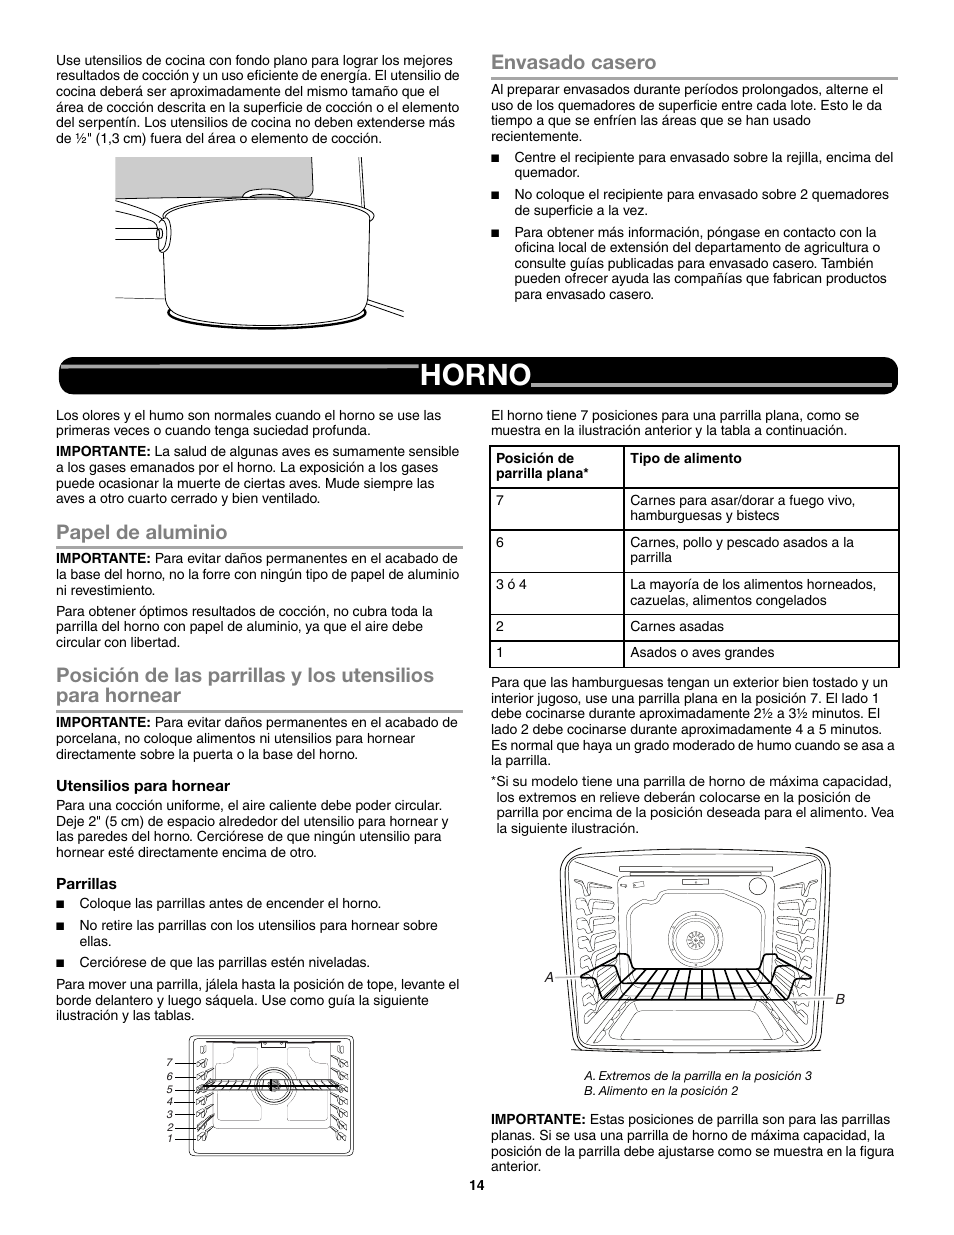 Envasado casero, Horno, Papel de aluminio | Whirlpool WEG730H0DS Manual del usuario | Página 14 / 26